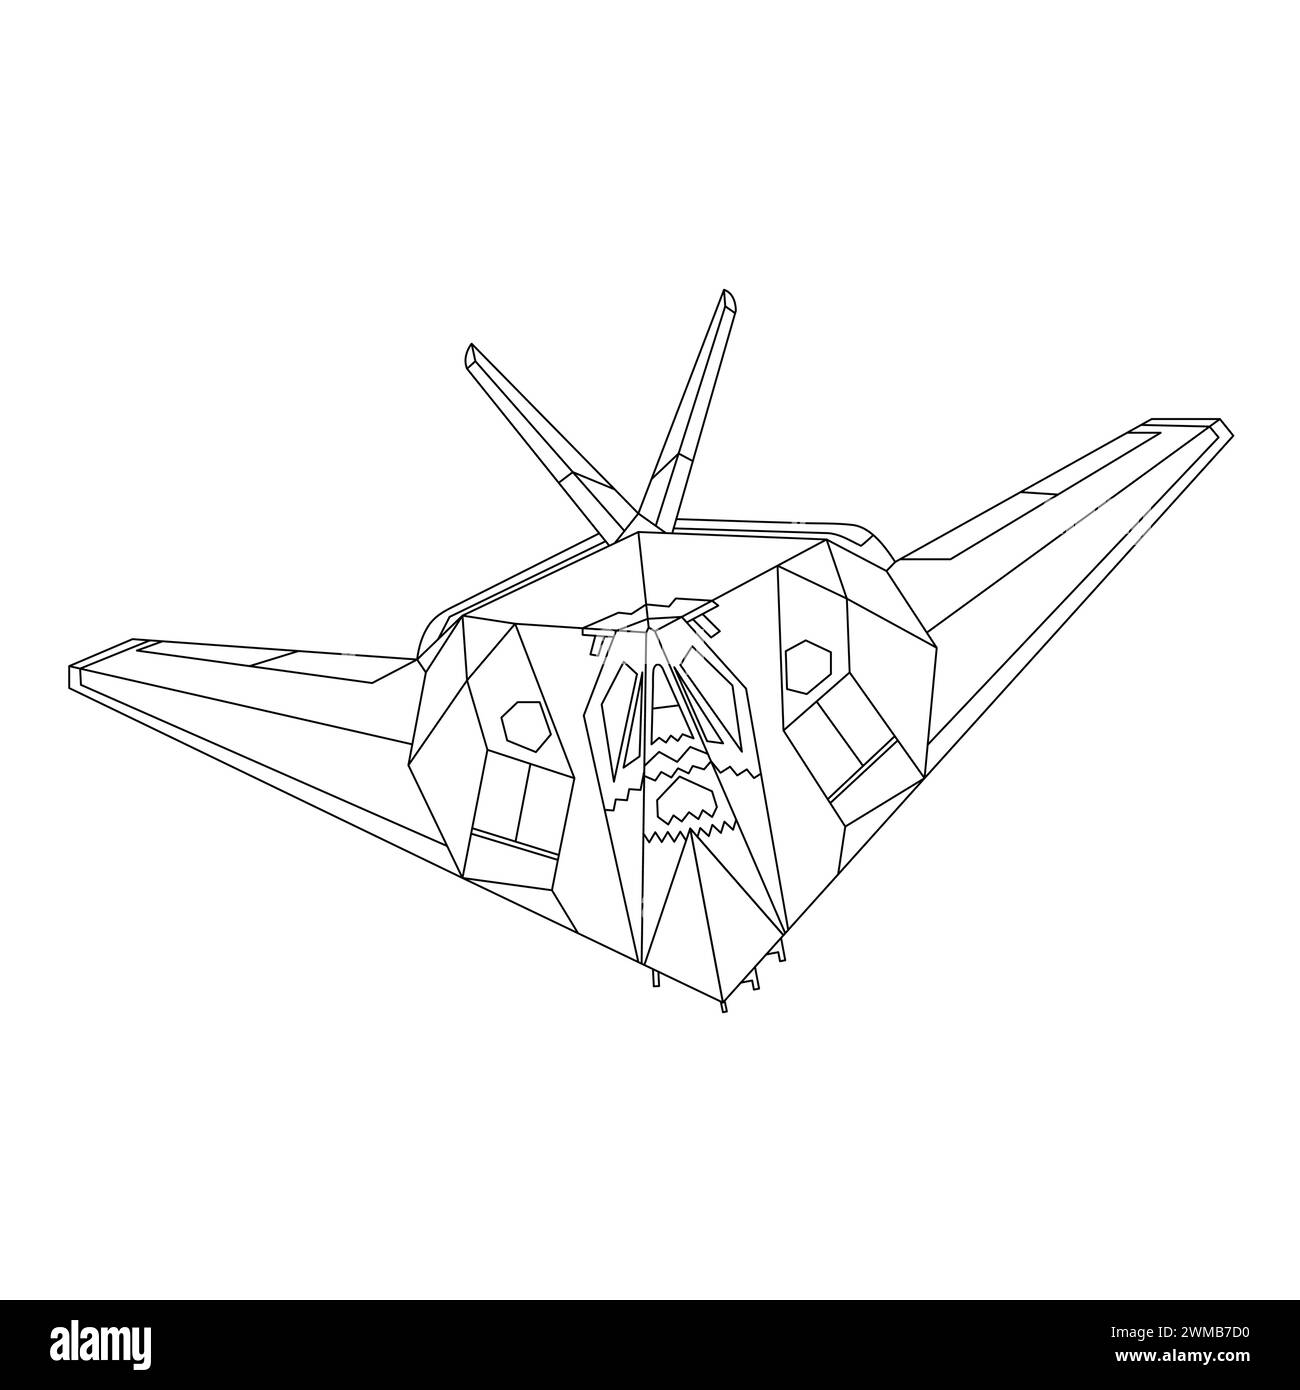 Flugzeug F-117 Nighthawk Gliederung Illustration. Fighter Jet F117 Malbuch für Kinder und Erwachsene. Militärflugzeug Vektor. Cartoon Flugzeug Stock Vektor